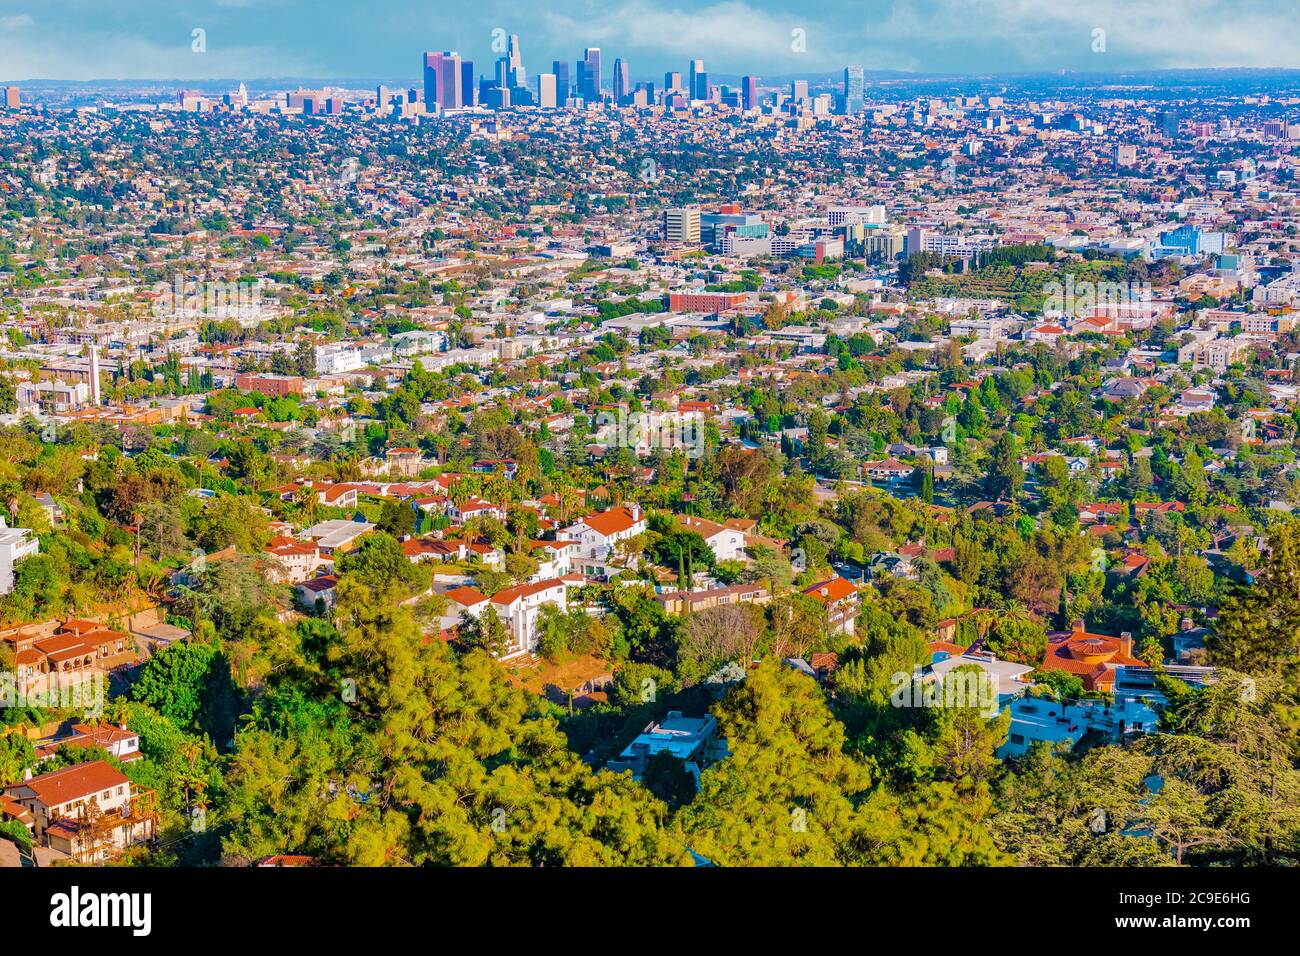 Une vue sur la colline de l'étalement urbain de Los Angeles montre des gratte-ciels dans la distance et des maisons construites sur les collines au premier plan. Banque D'Images